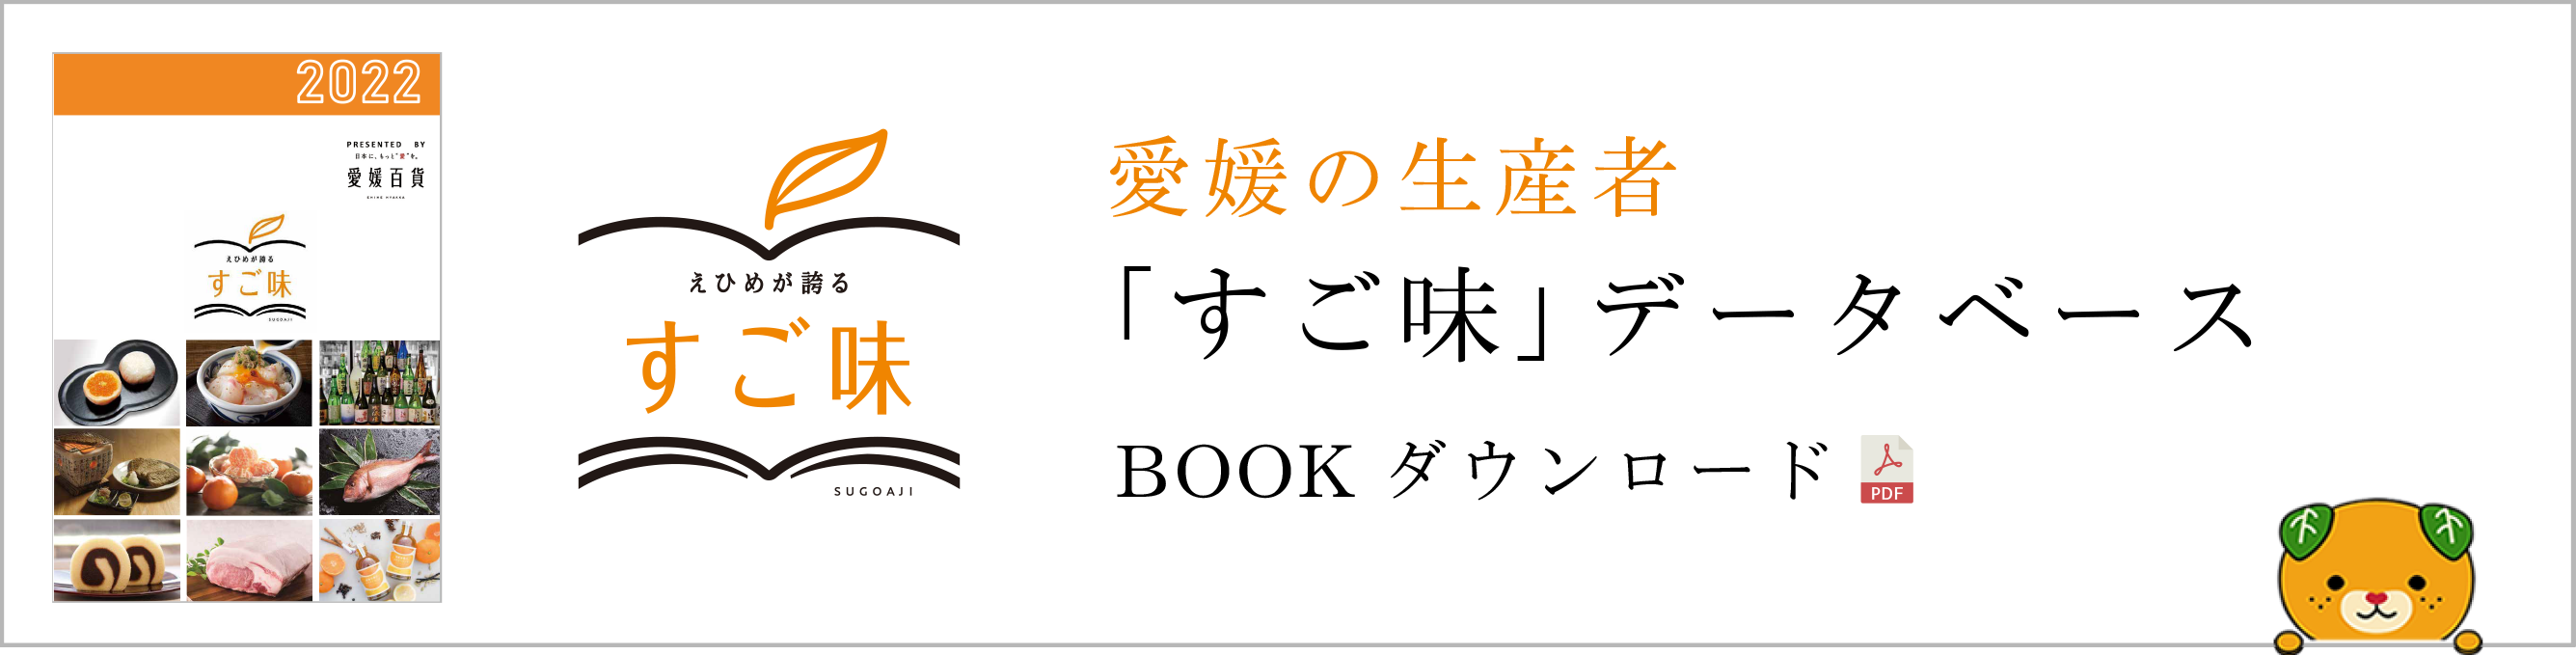 愛媛の生産者「すご味」データベース BOOKダウンロード